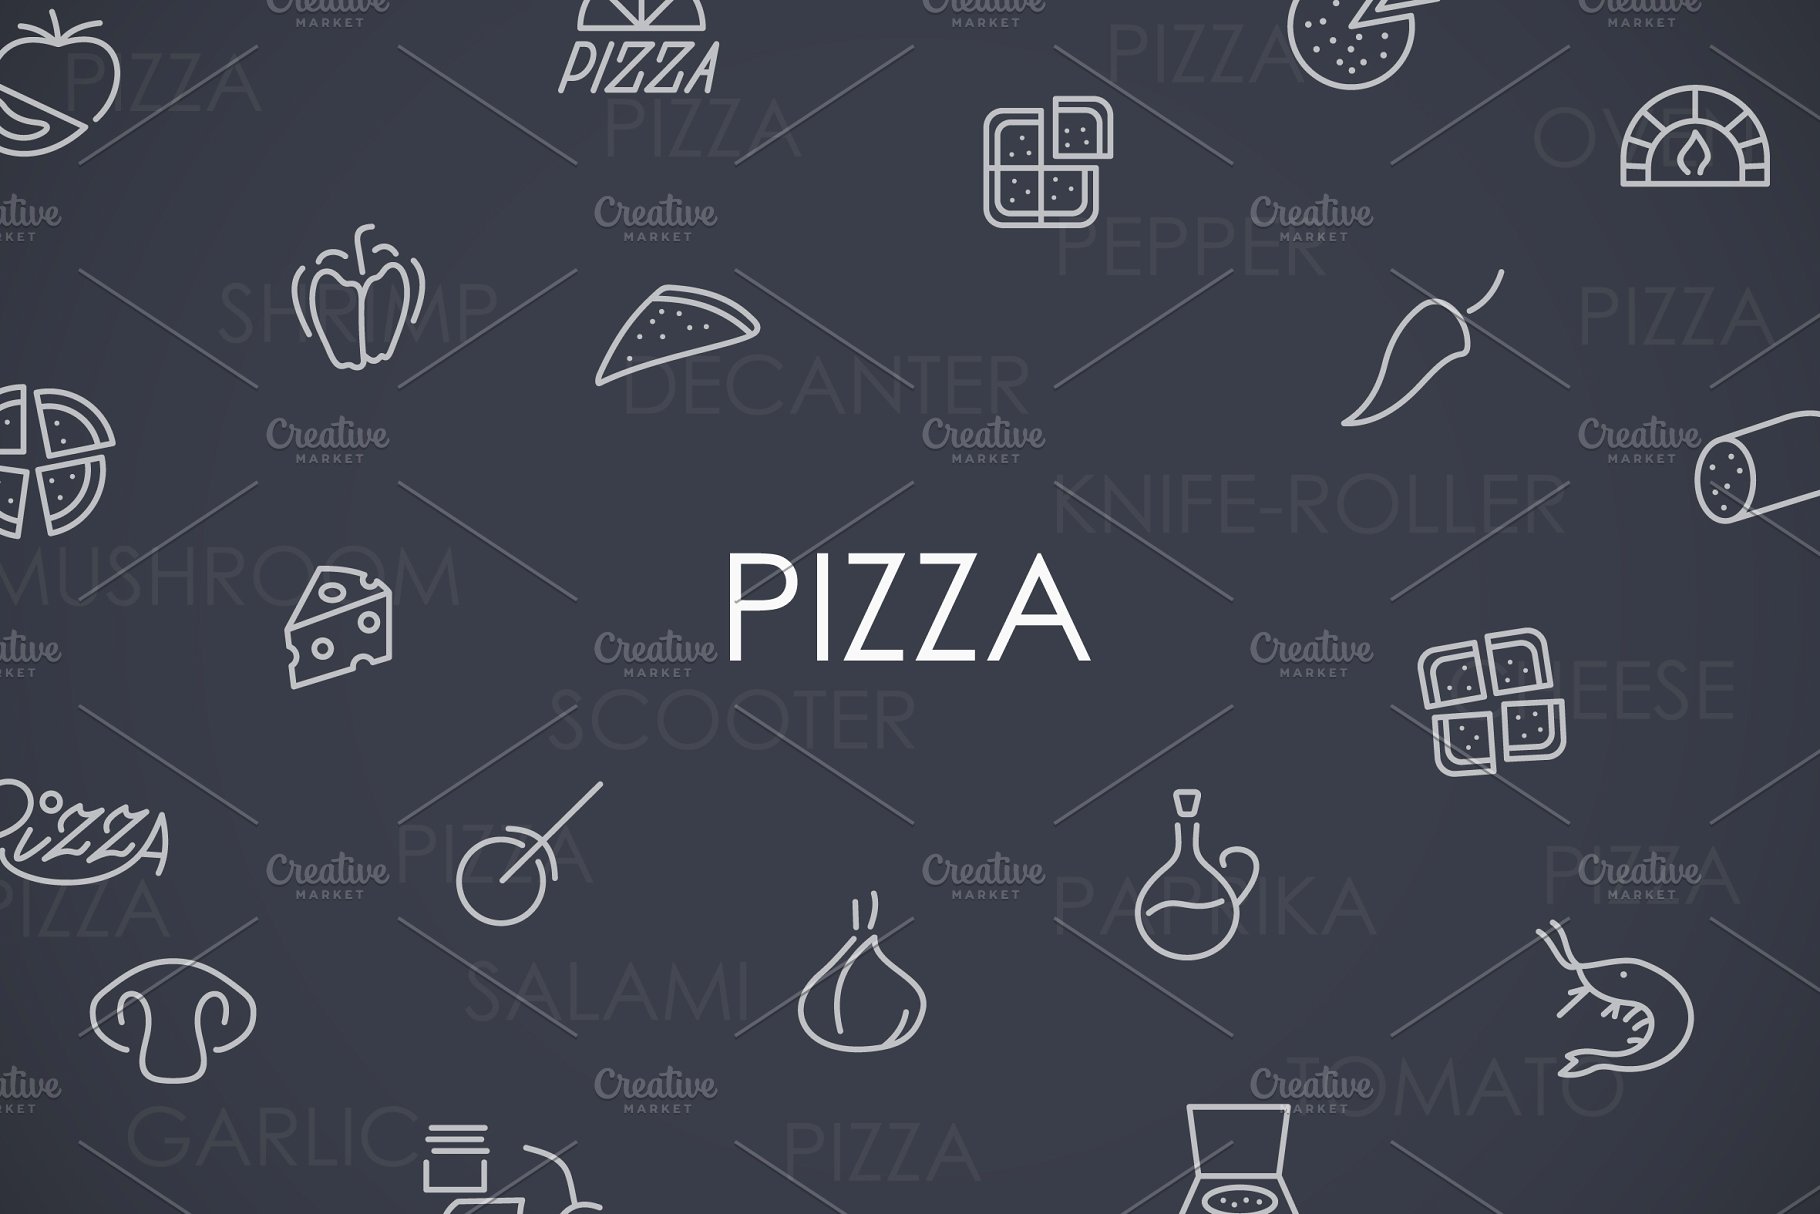 必胜客图标大全 Pizza thinline icons #